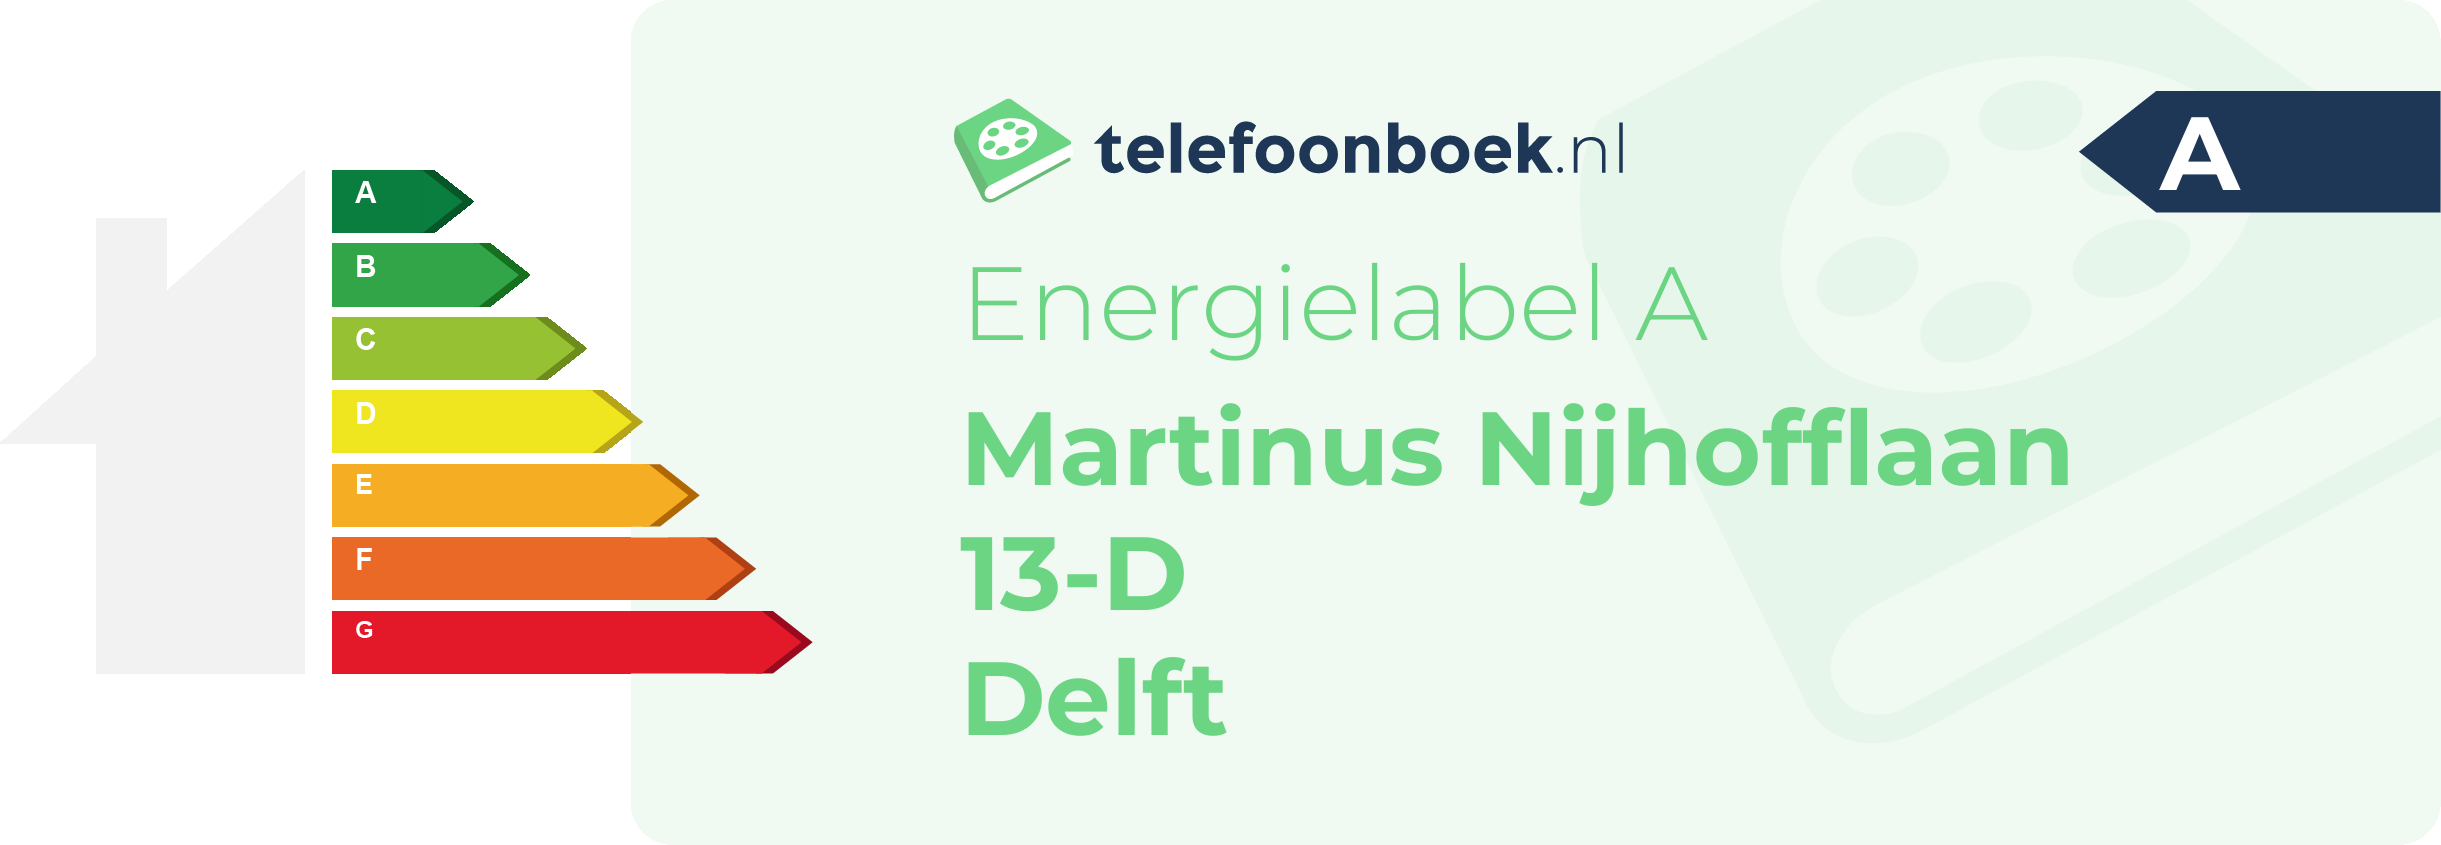 Energielabel Martinus Nijhofflaan 13-D Delft